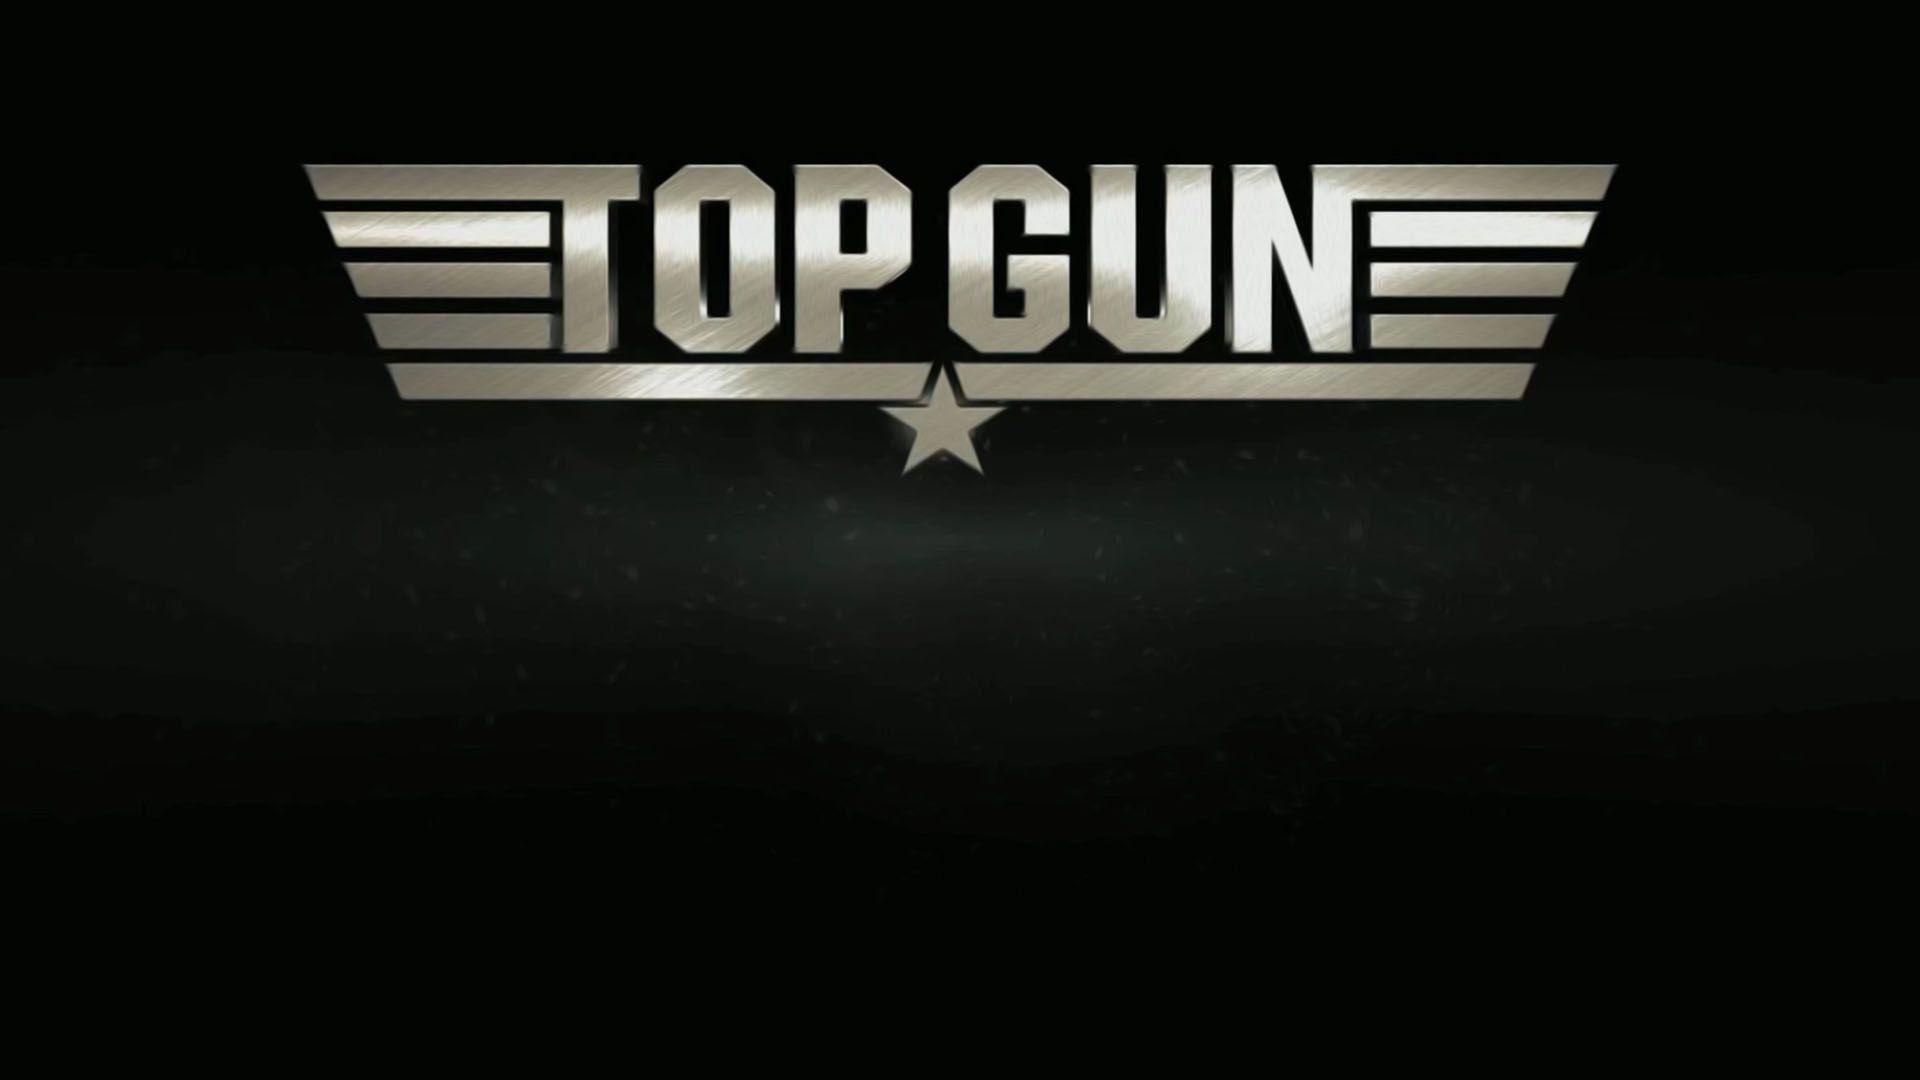 Top Gun Wallpaper.com